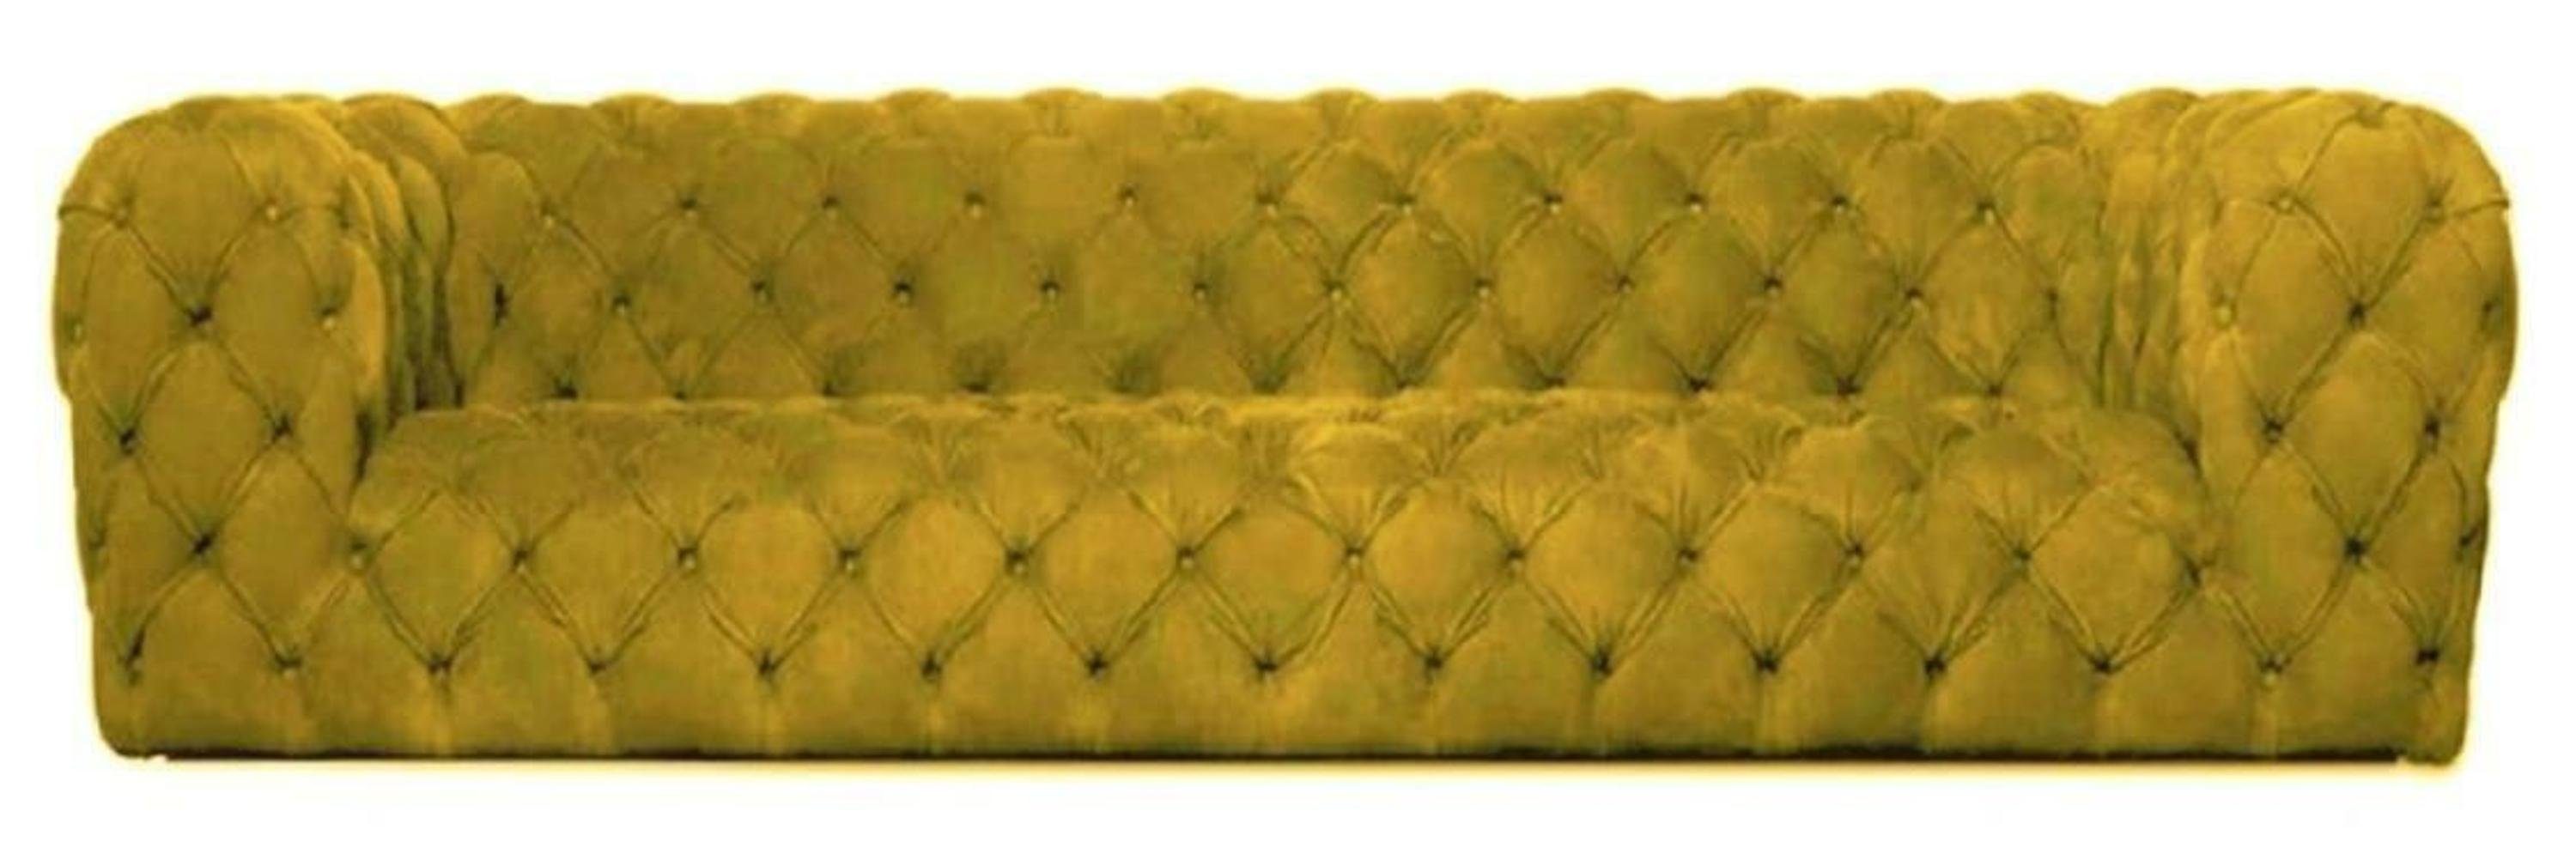 xxl Viersitzer gemütliche Gelbe JVmoebel Chesterfield Chesterfield-Sofa, sofa Couch big